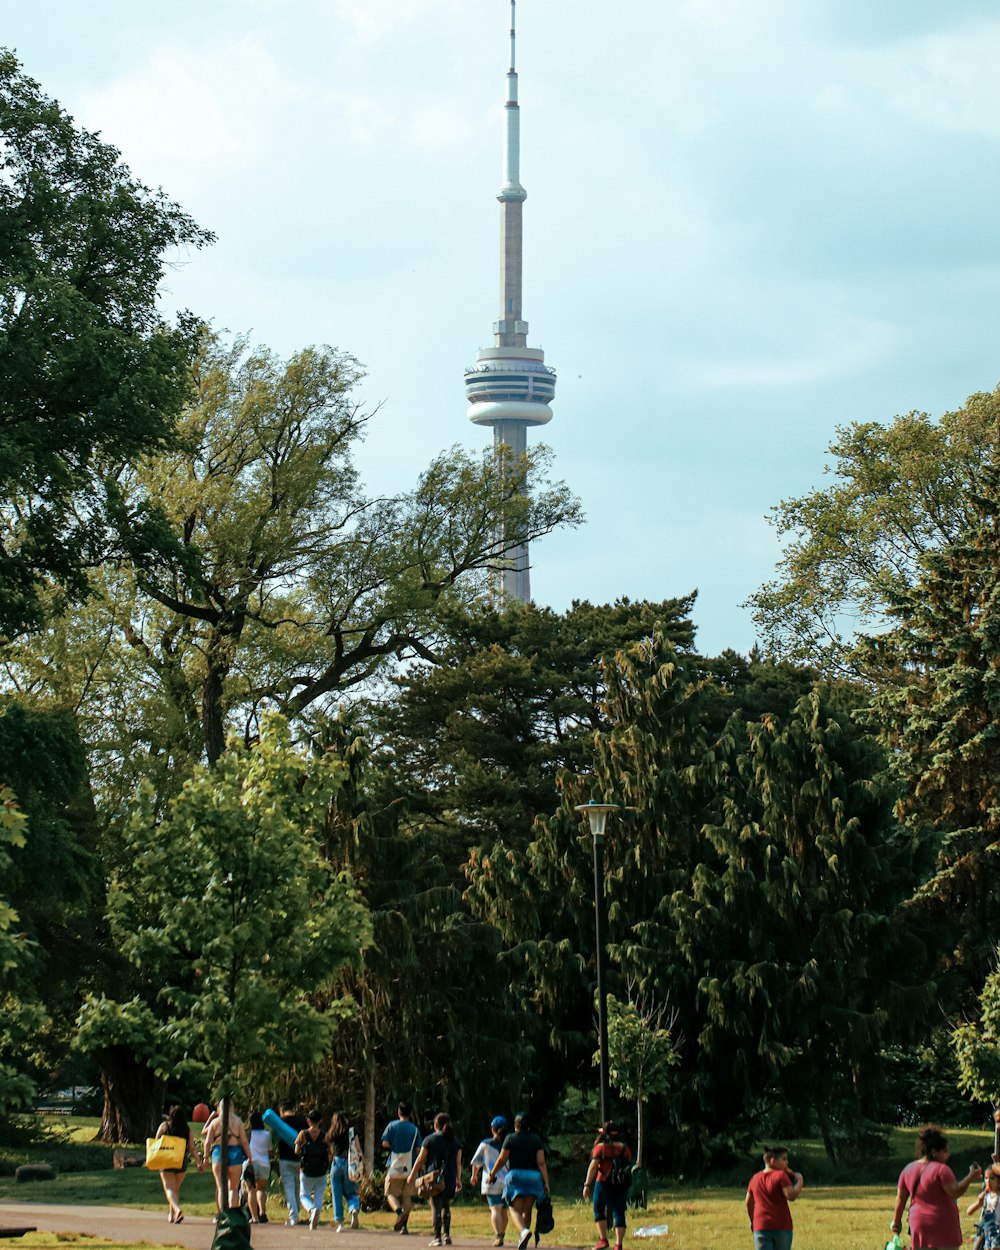 Un grupo de personas caminando en un parque con una torre alta y puntiaguda en el fondo